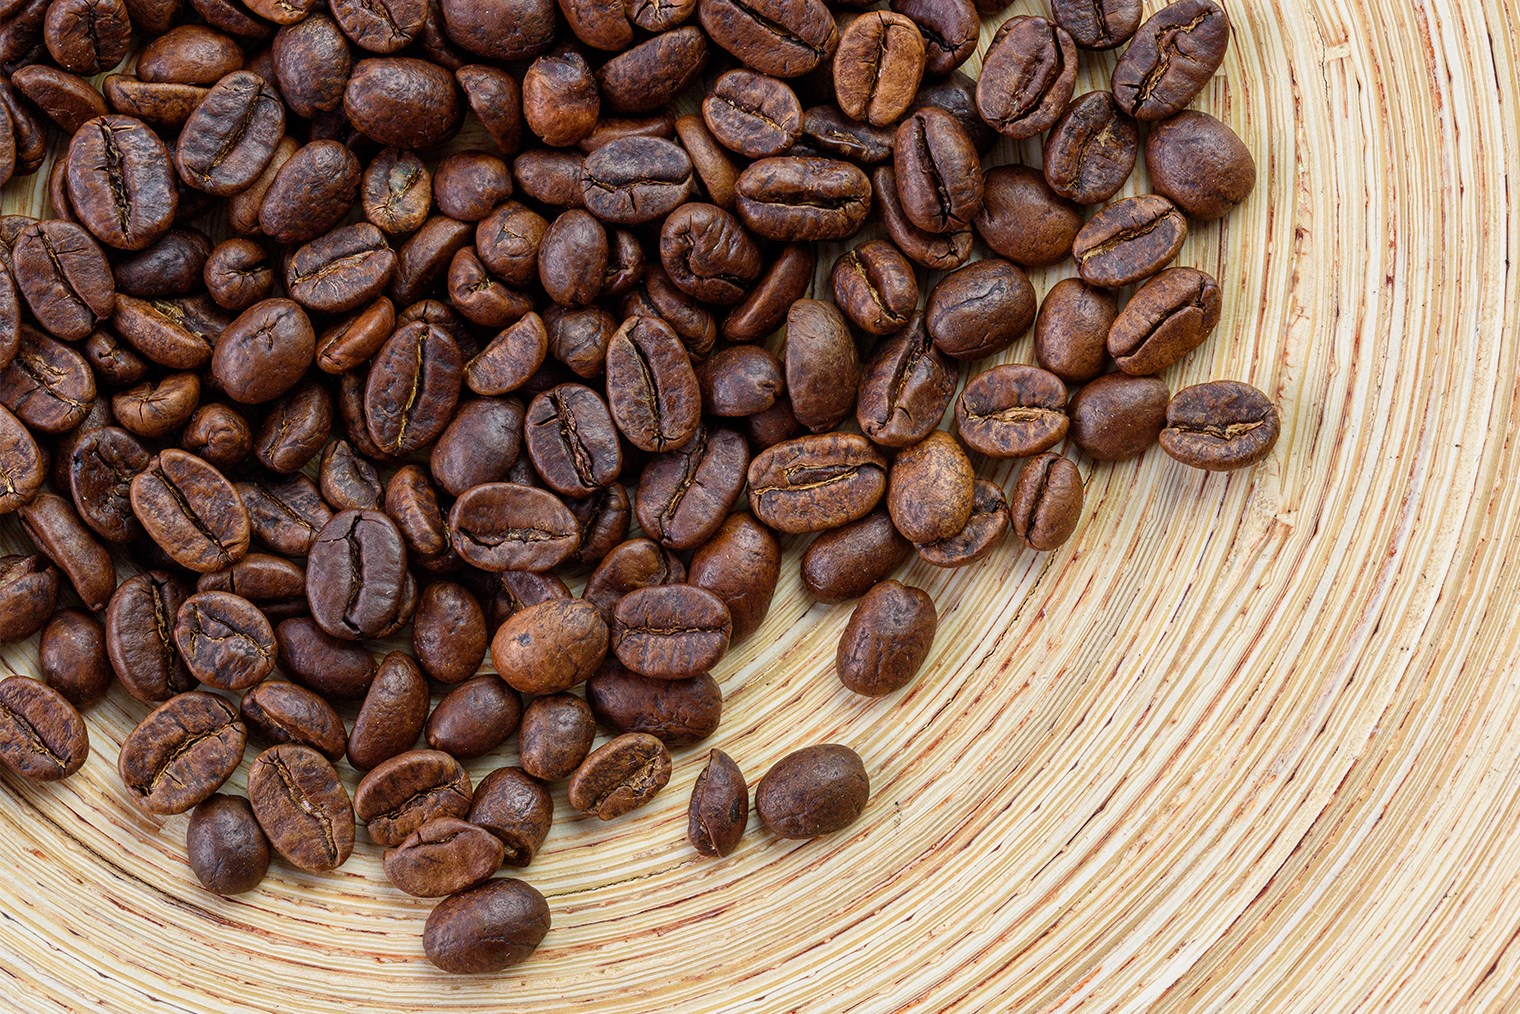 На вид зерна кофе без кофеина ничем не отличаются от обычных. Фотография: Dremari Graphics / Shutterstock